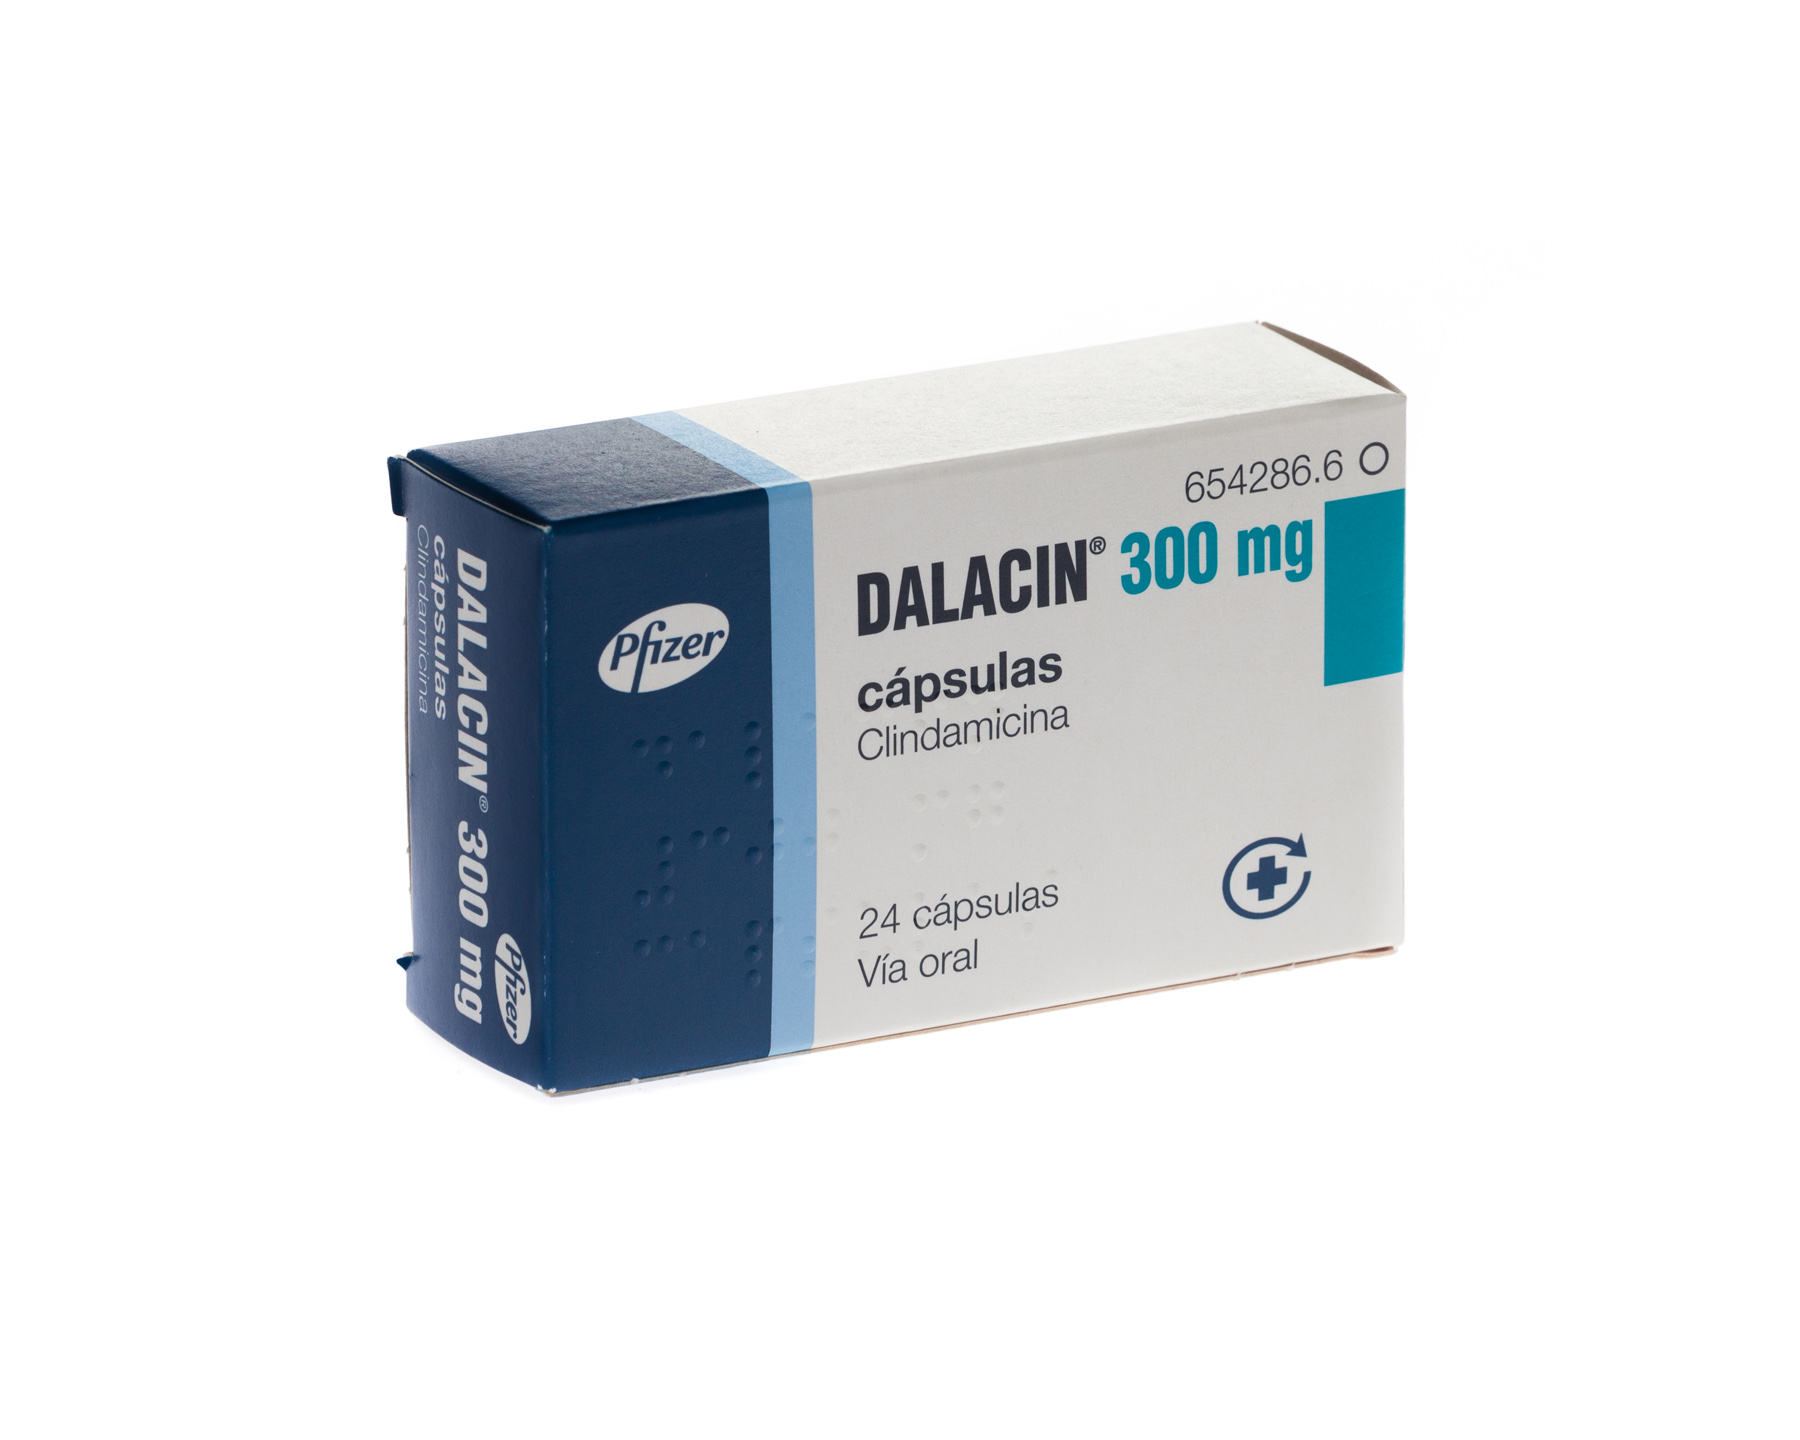 DALACIN 300 mg 500 CAPSULAS